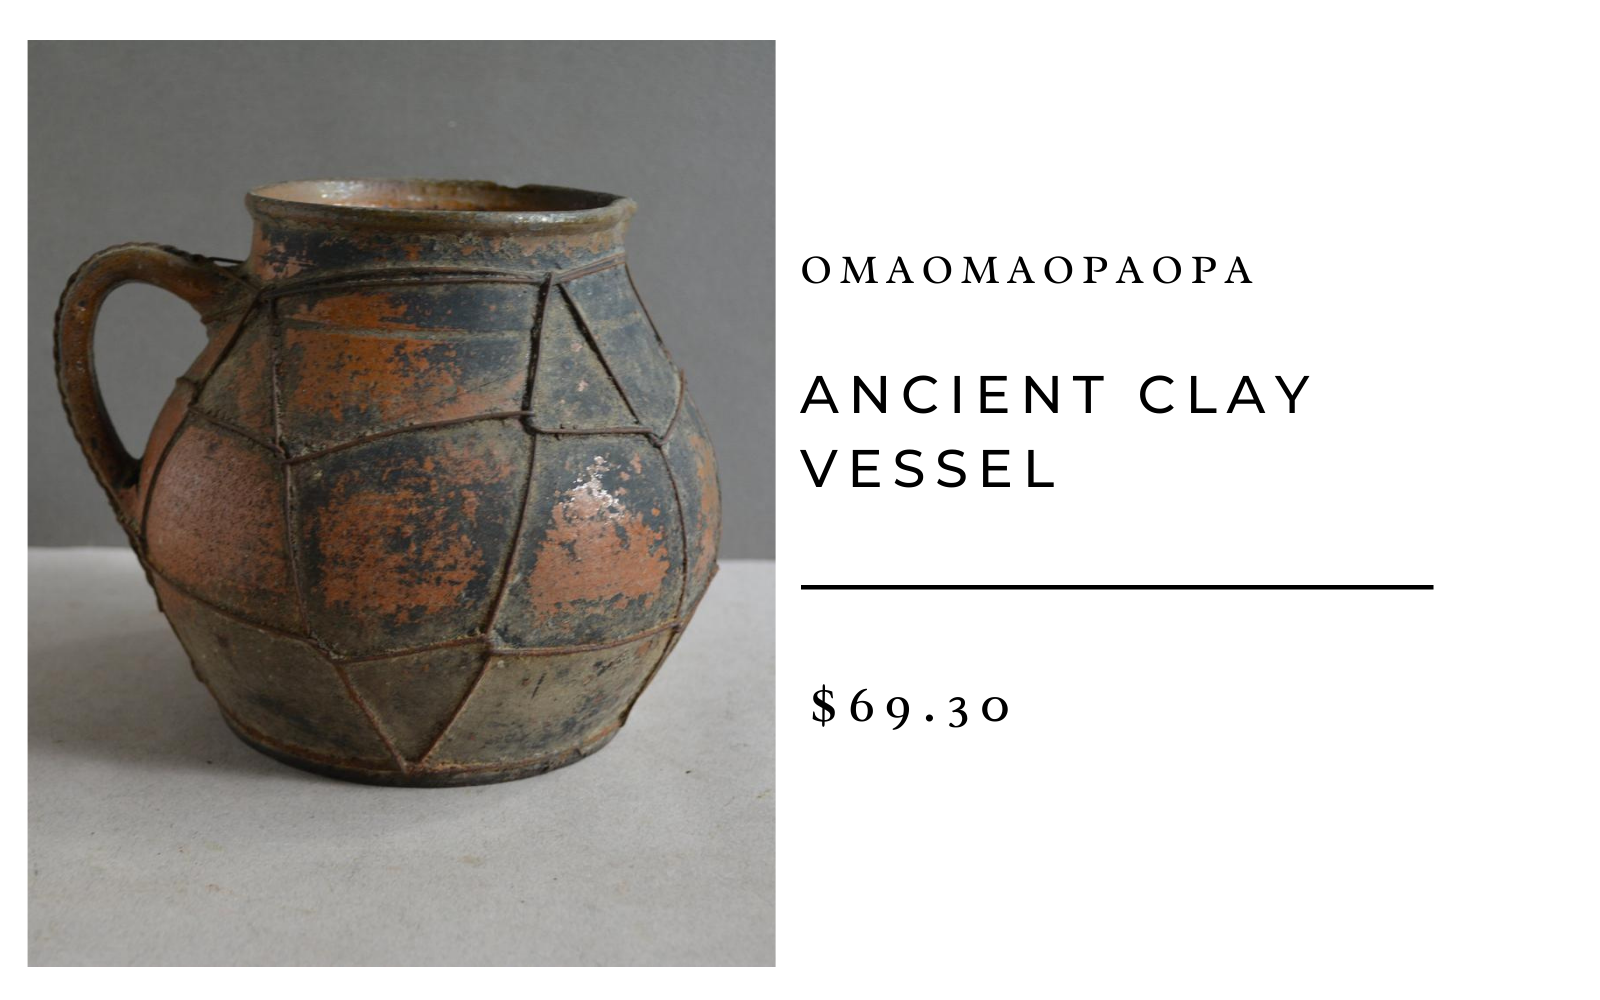 OmaOmaOpaOpa Ancient Clay Vessel 